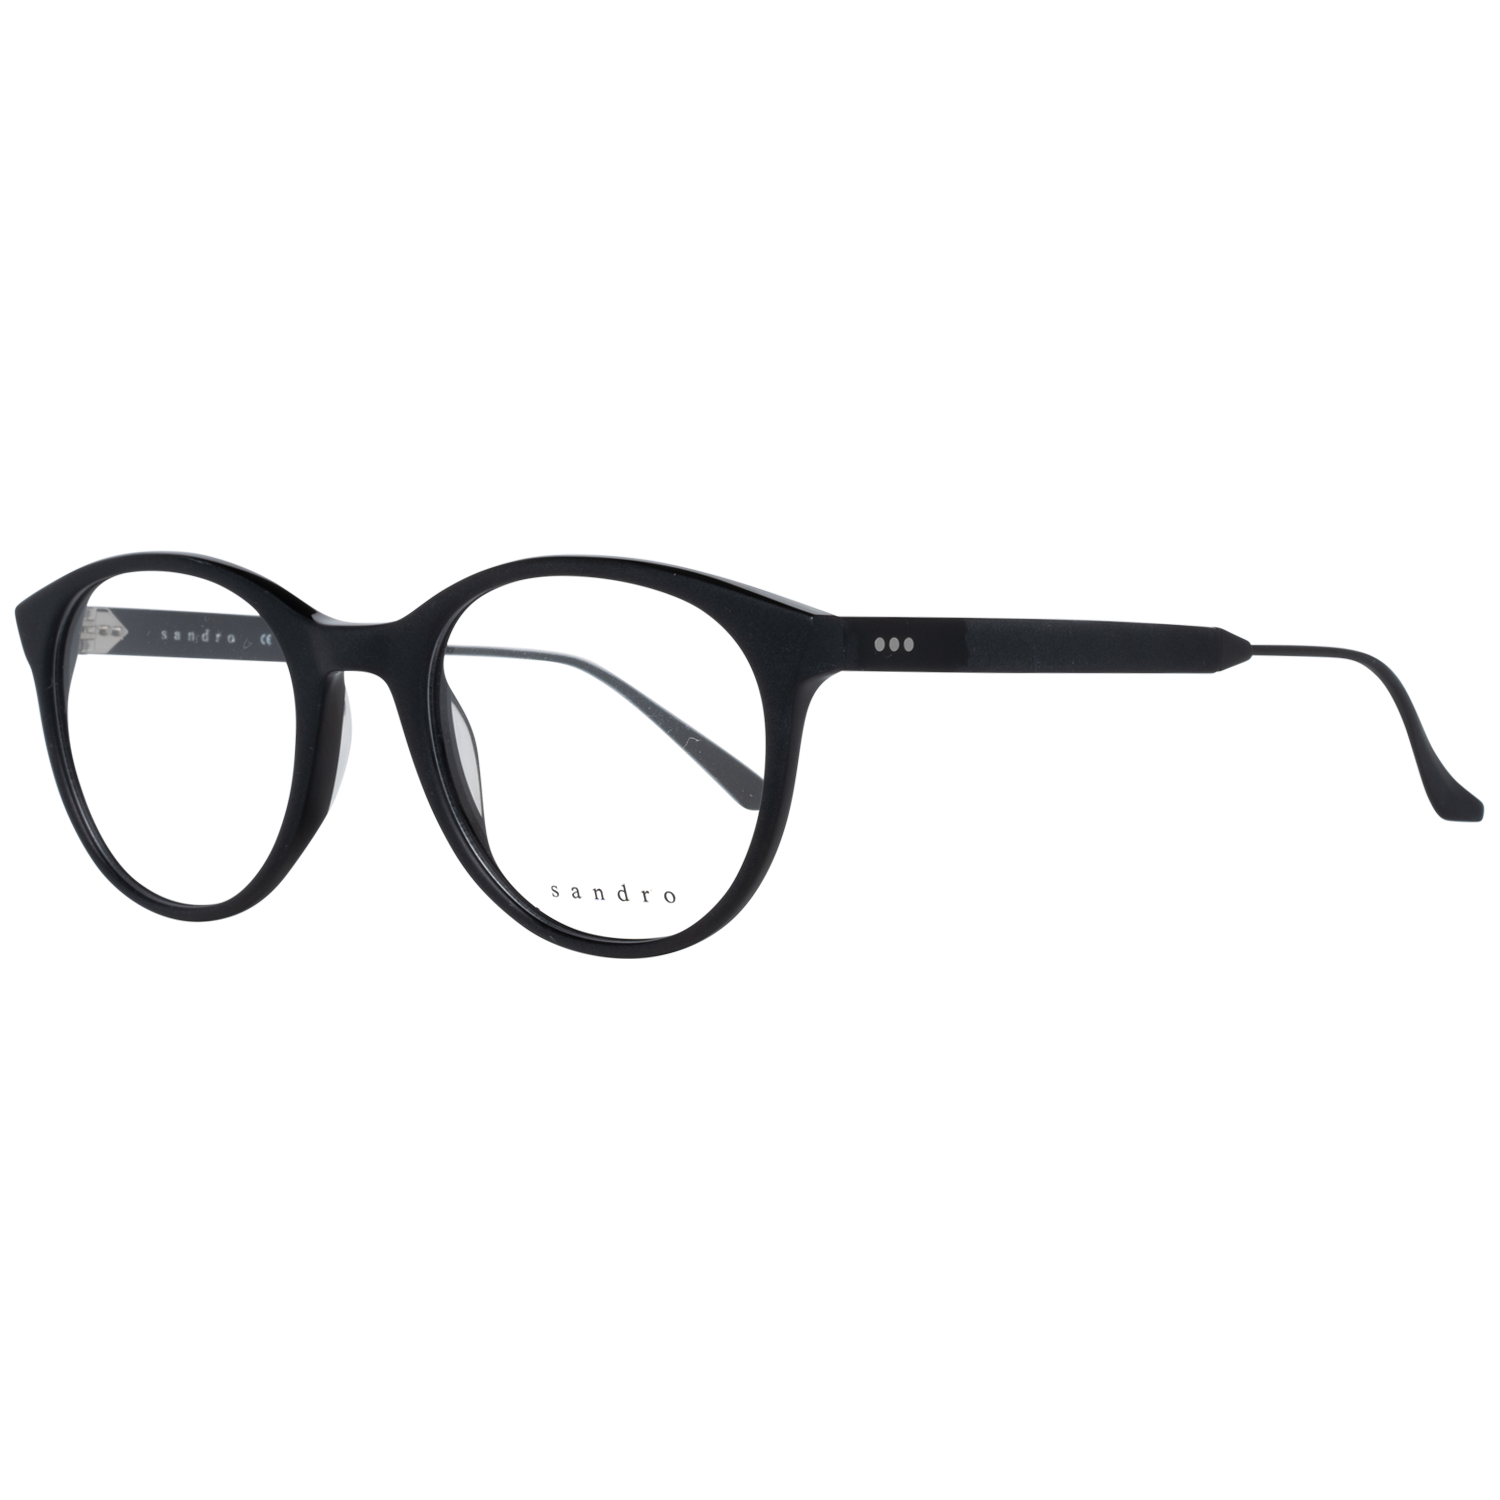 Sandro Frames Sandro Optical Frame SD1017 001 51 Eyeglasses Eyewear UK USA Australia 